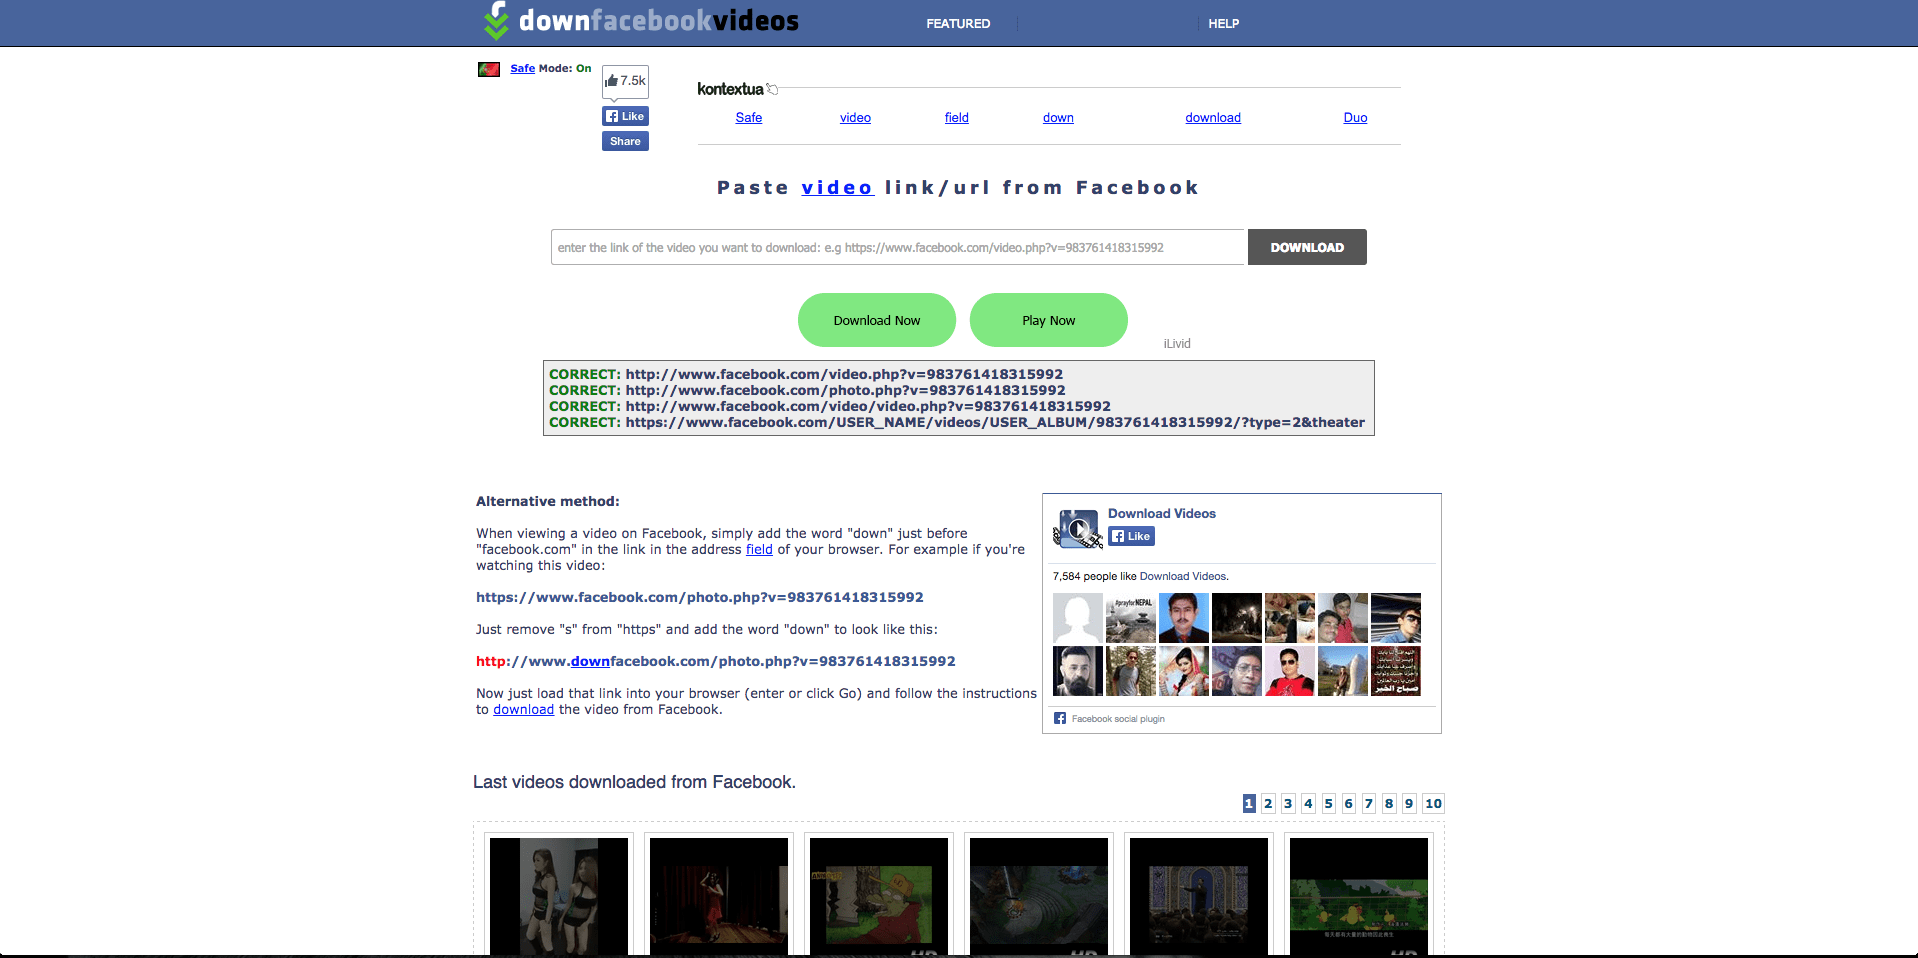 tela do DownFacebook, um dos sites para fazer download de vídeos do Facebook